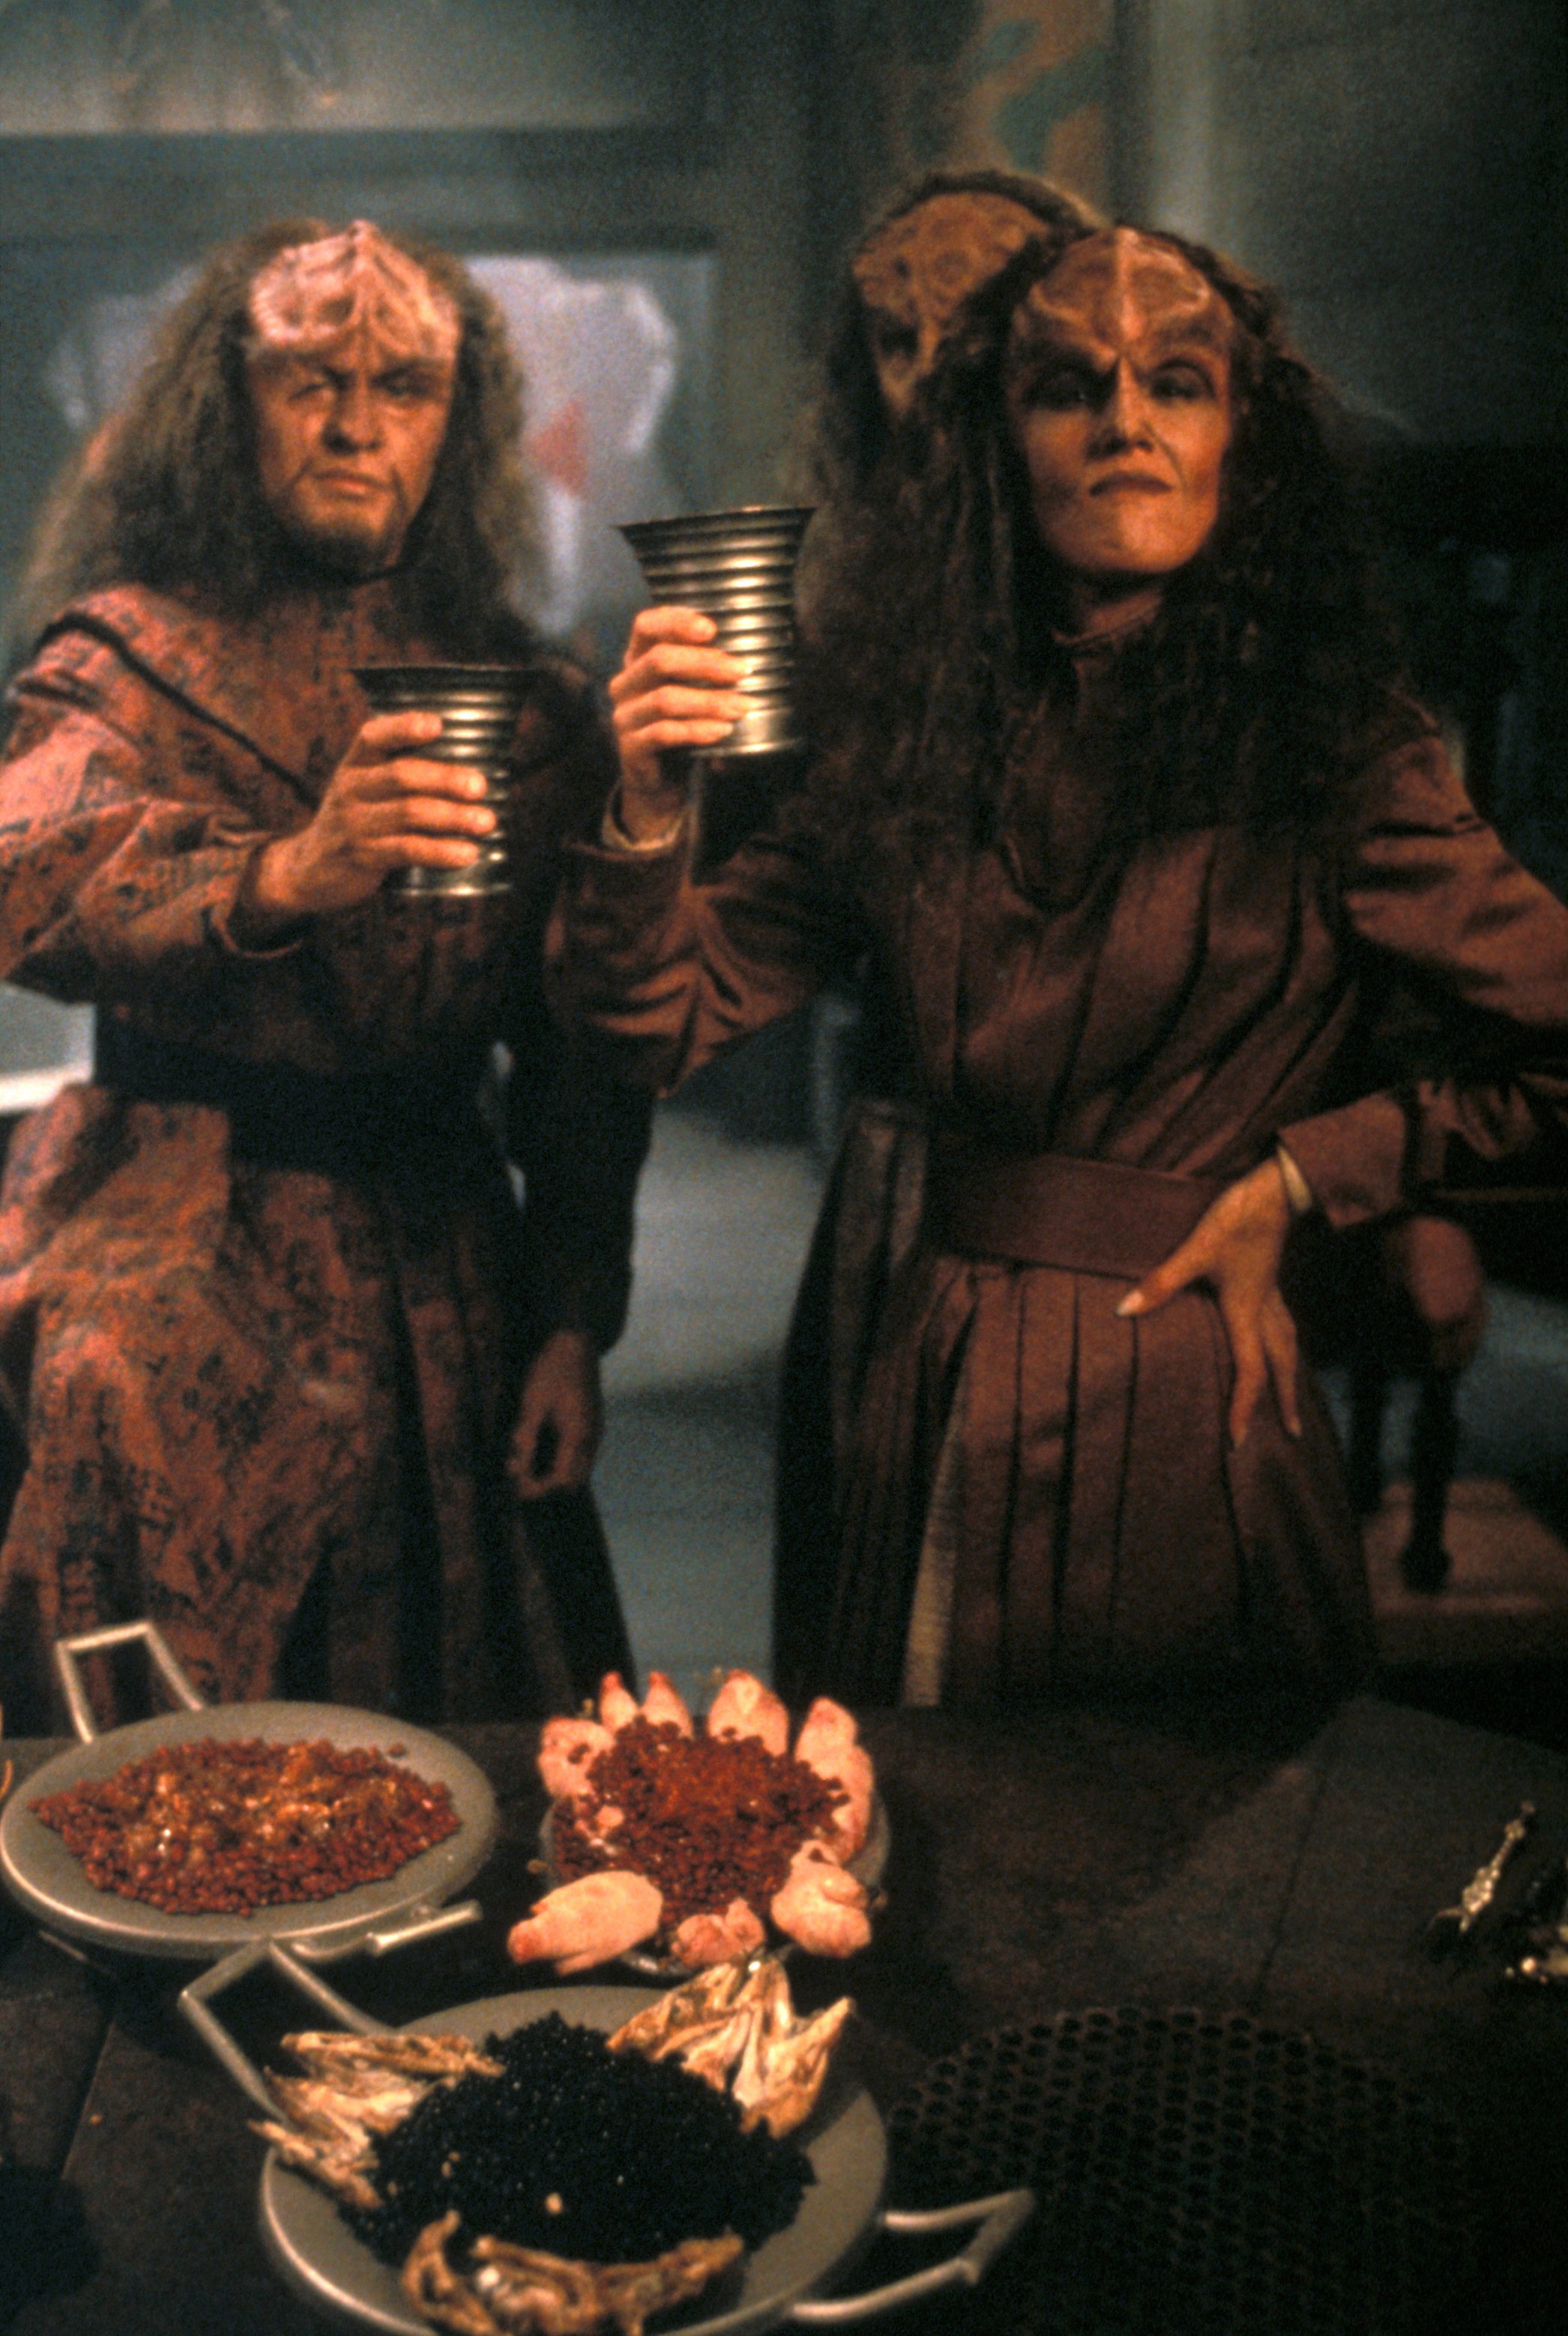 Unknown Klingon actors